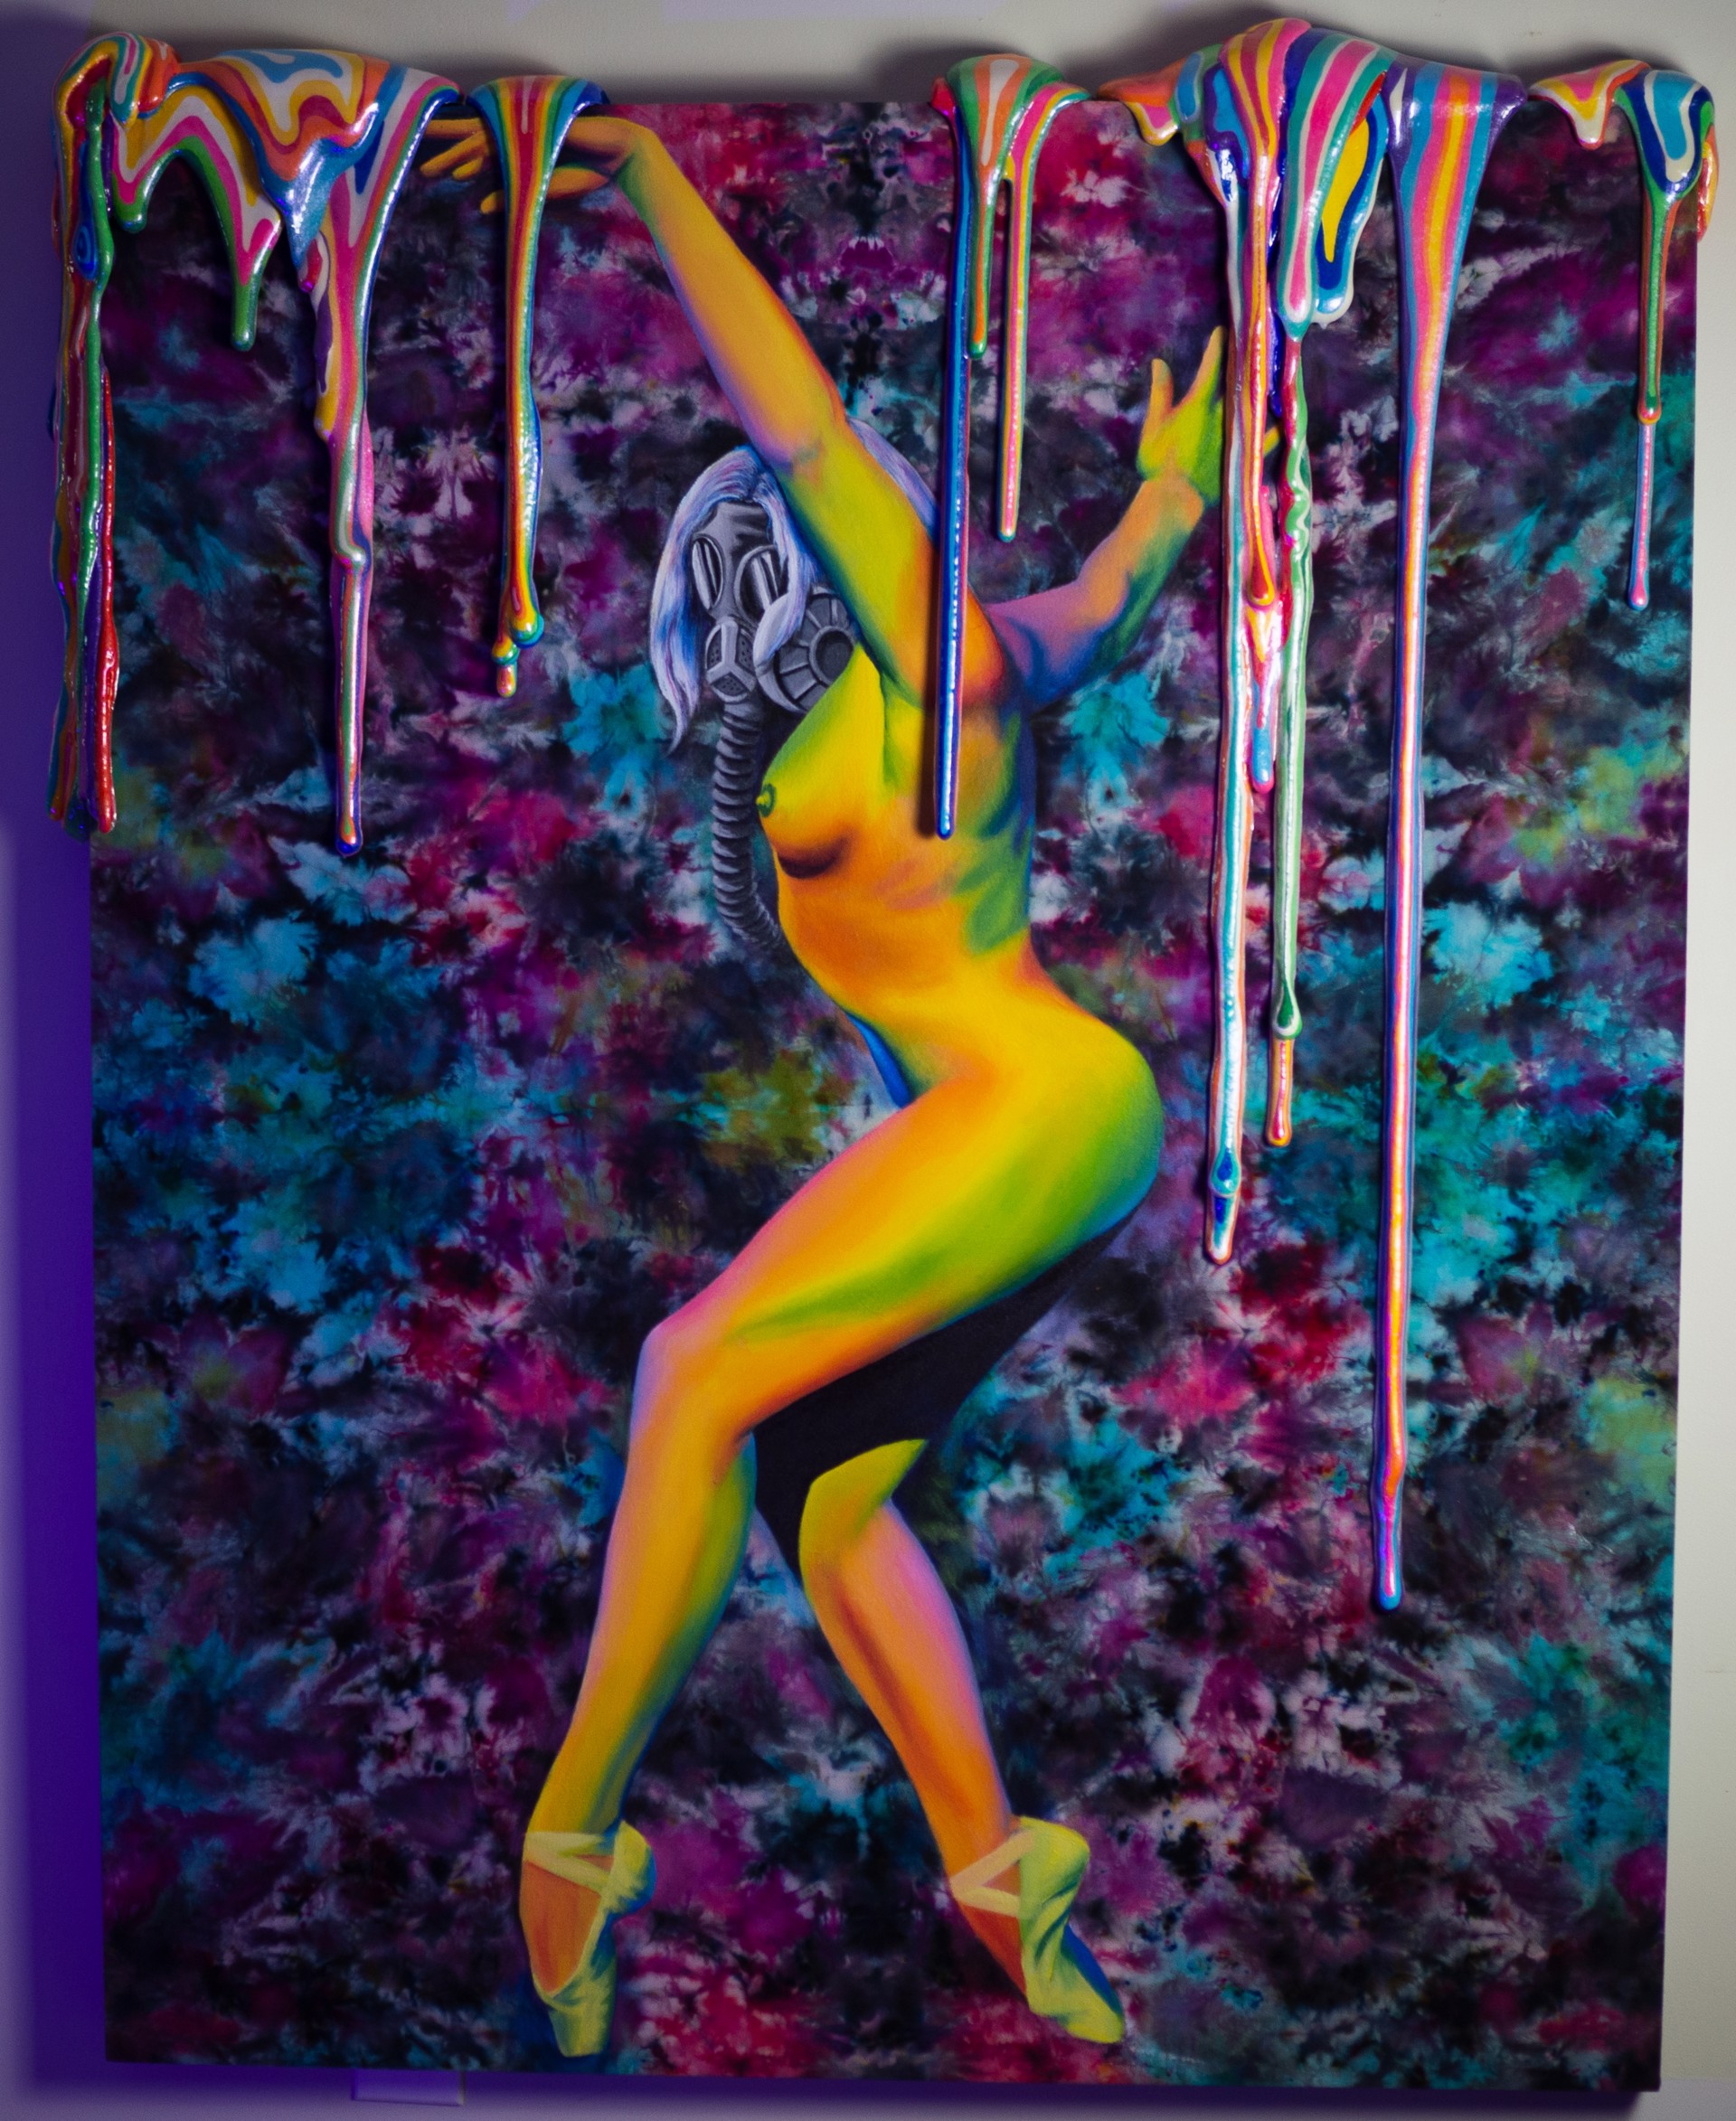 Dancing In Color by Joe Gifford